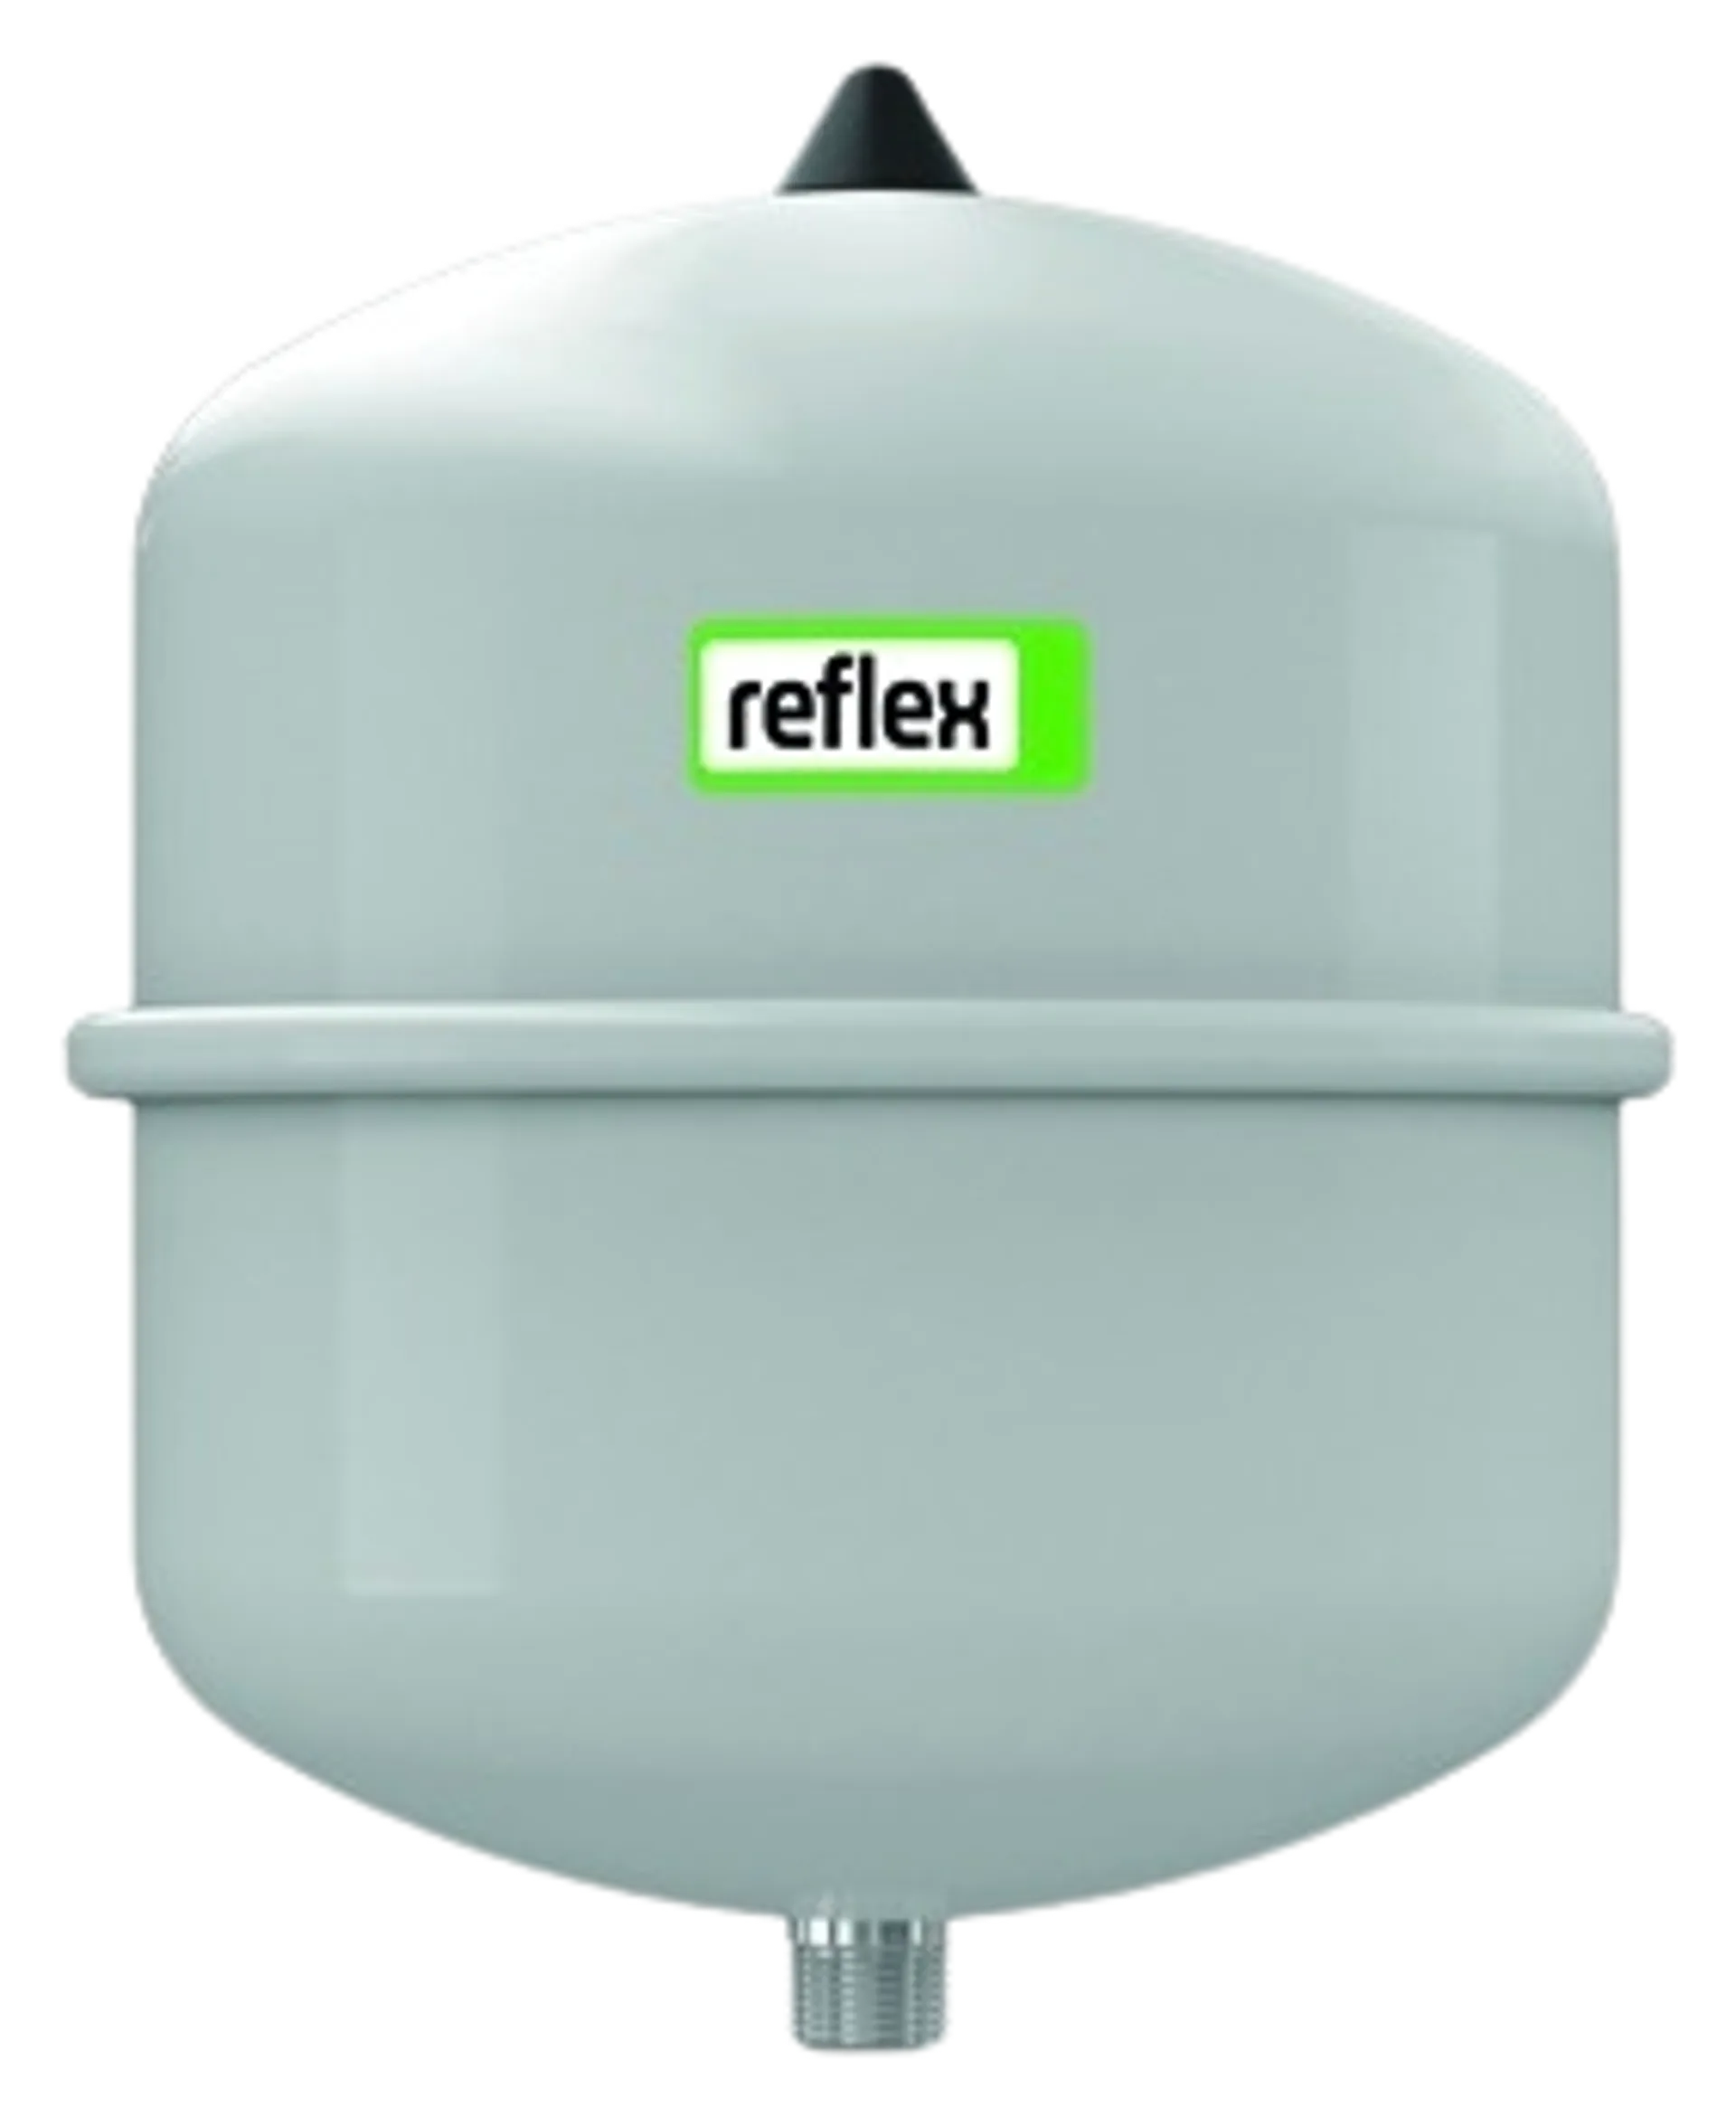 Reflex kalvopaisunta-astia n 35 4.0 bar